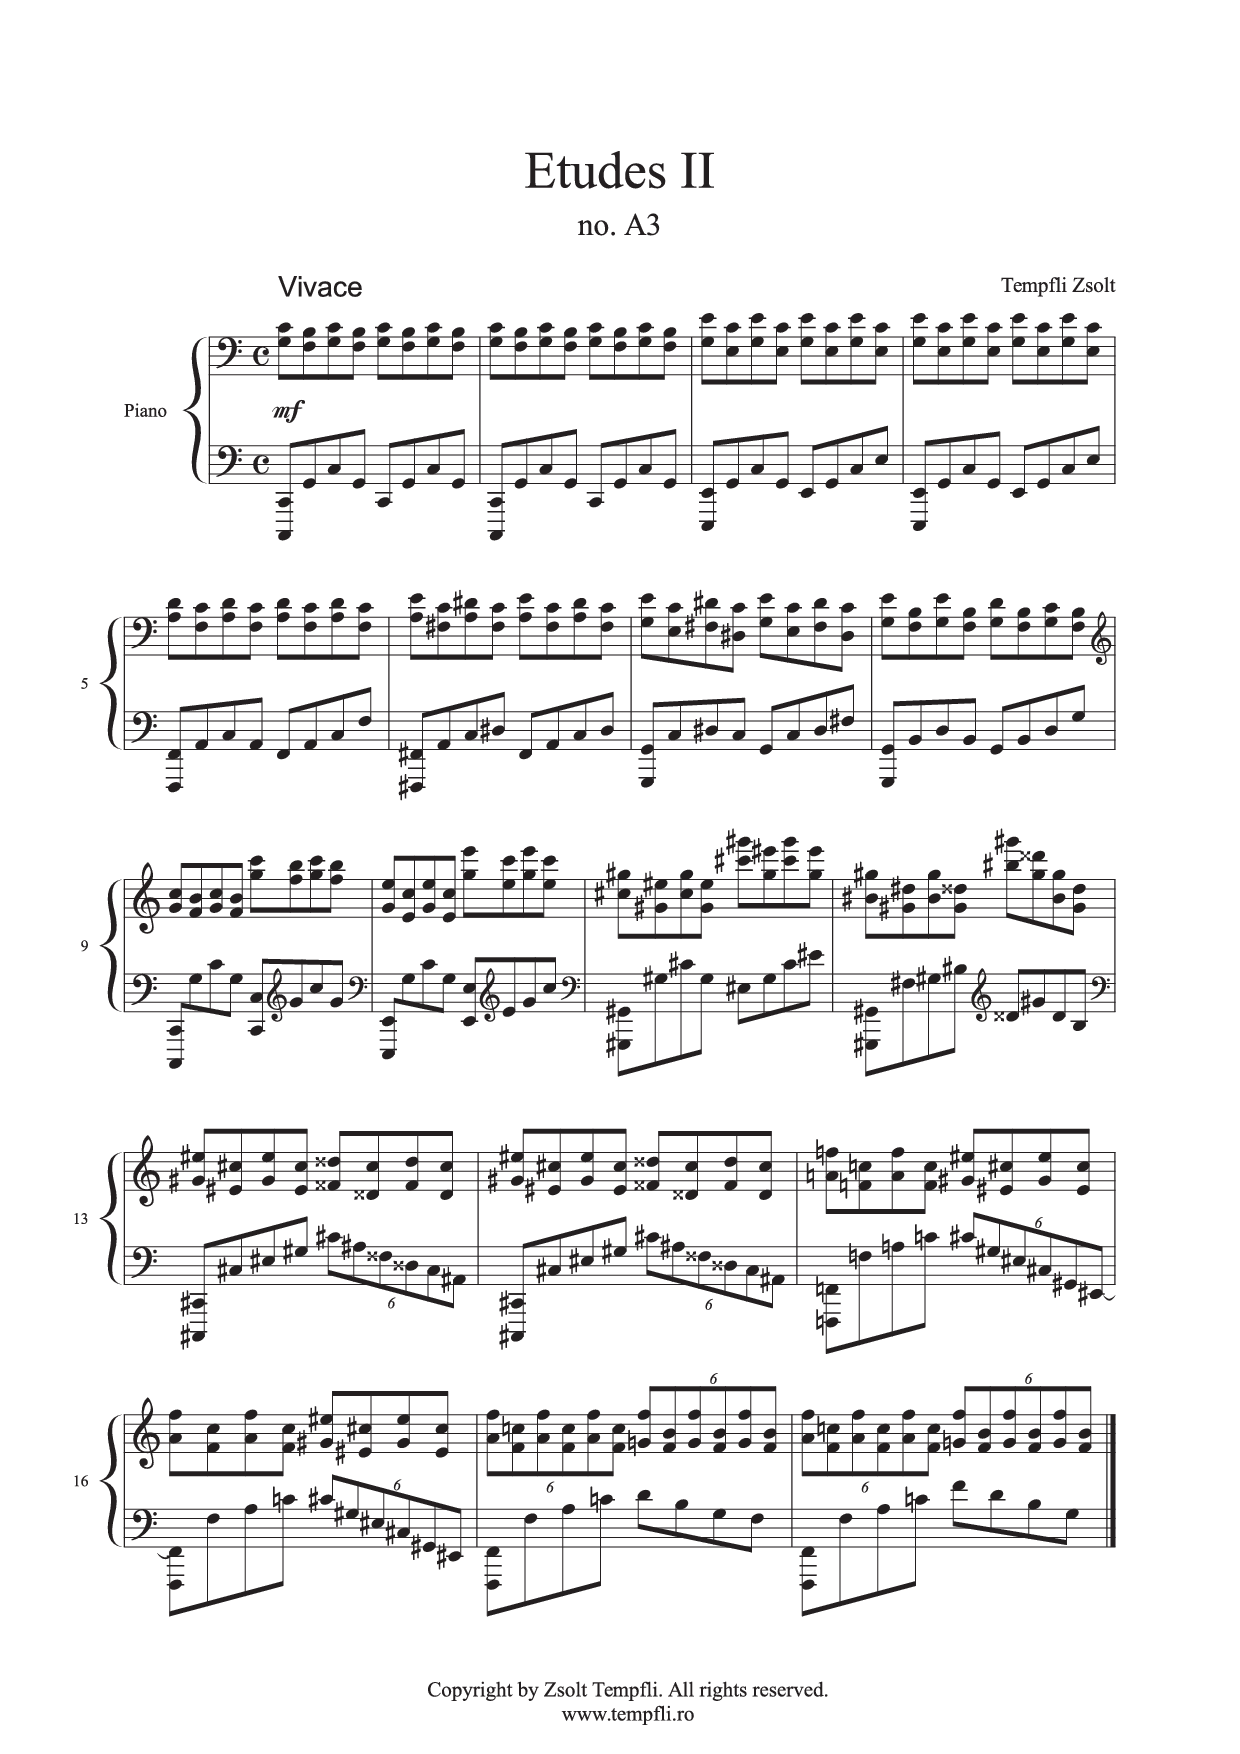 Zsolt Tempfli - Studii II A3 op. 25 no. A3 pentru pian